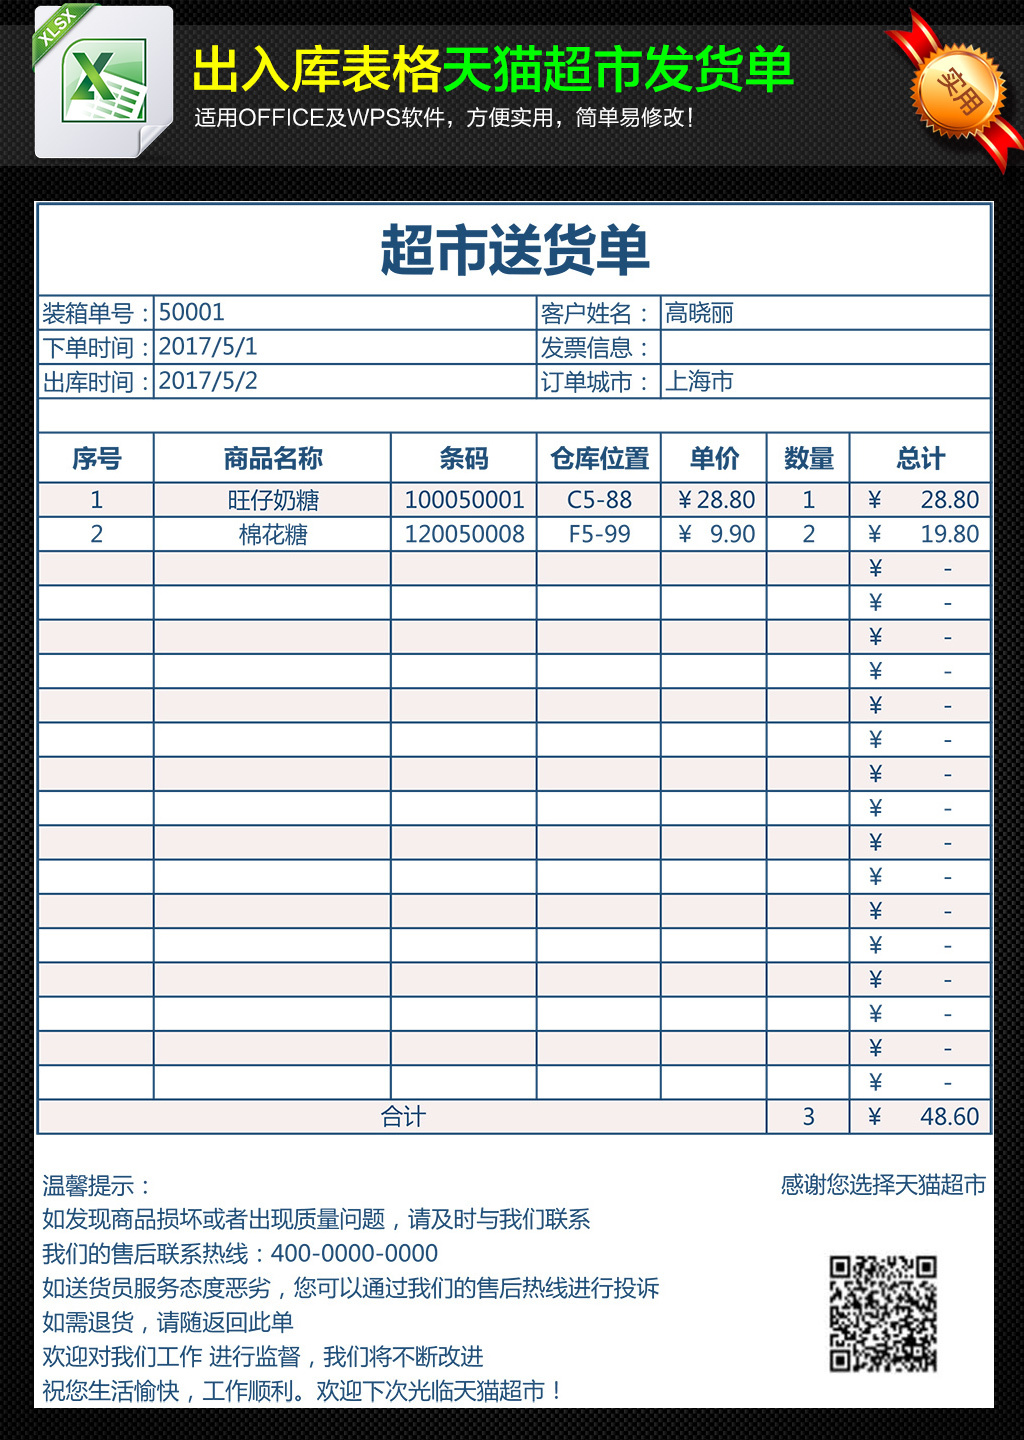 天猫超市通用版送货单发货清单表格模板下载